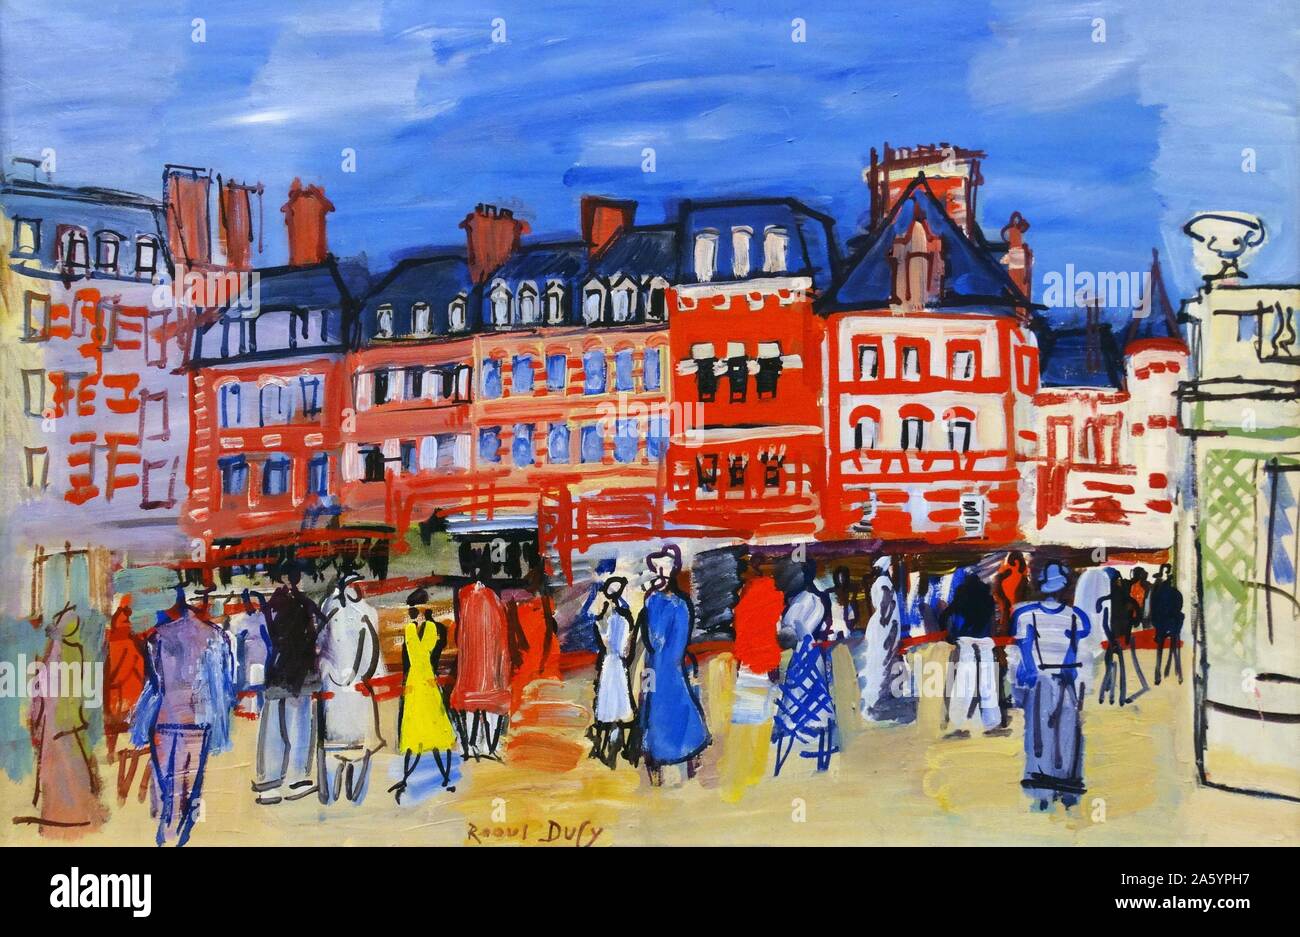 Maisons À Trouville von Raoul Dufy (1877-1953). Öl auf Leinwand, 1933. Dufy war ein französischer fauvistischen Maler, der einen farbenfrohen, dekorativen Stil entwickelt, der schnell in Mode kam. Stockfoto